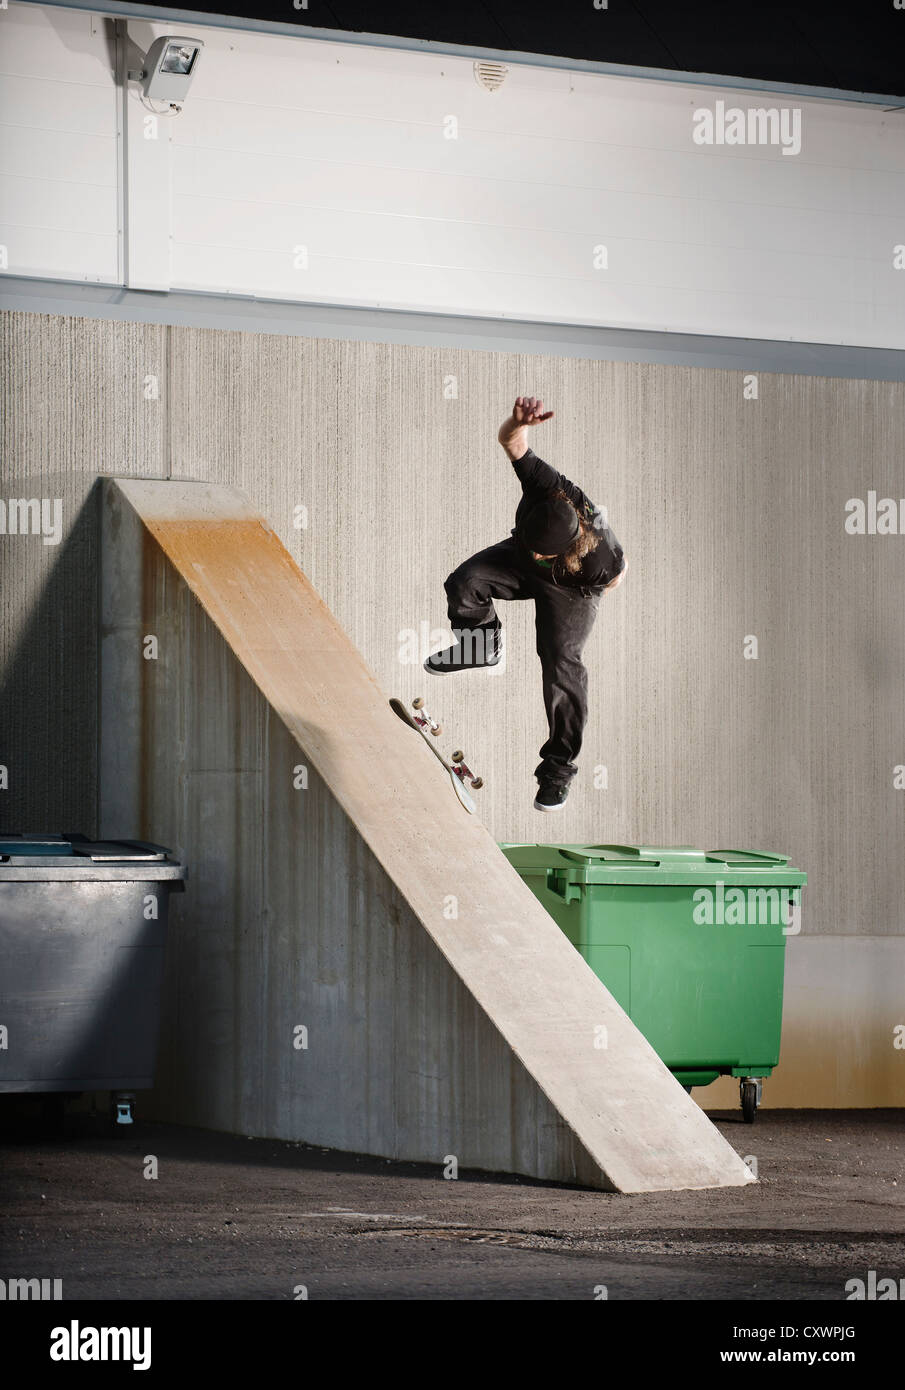 Man skating on urban ramp Stock Photo